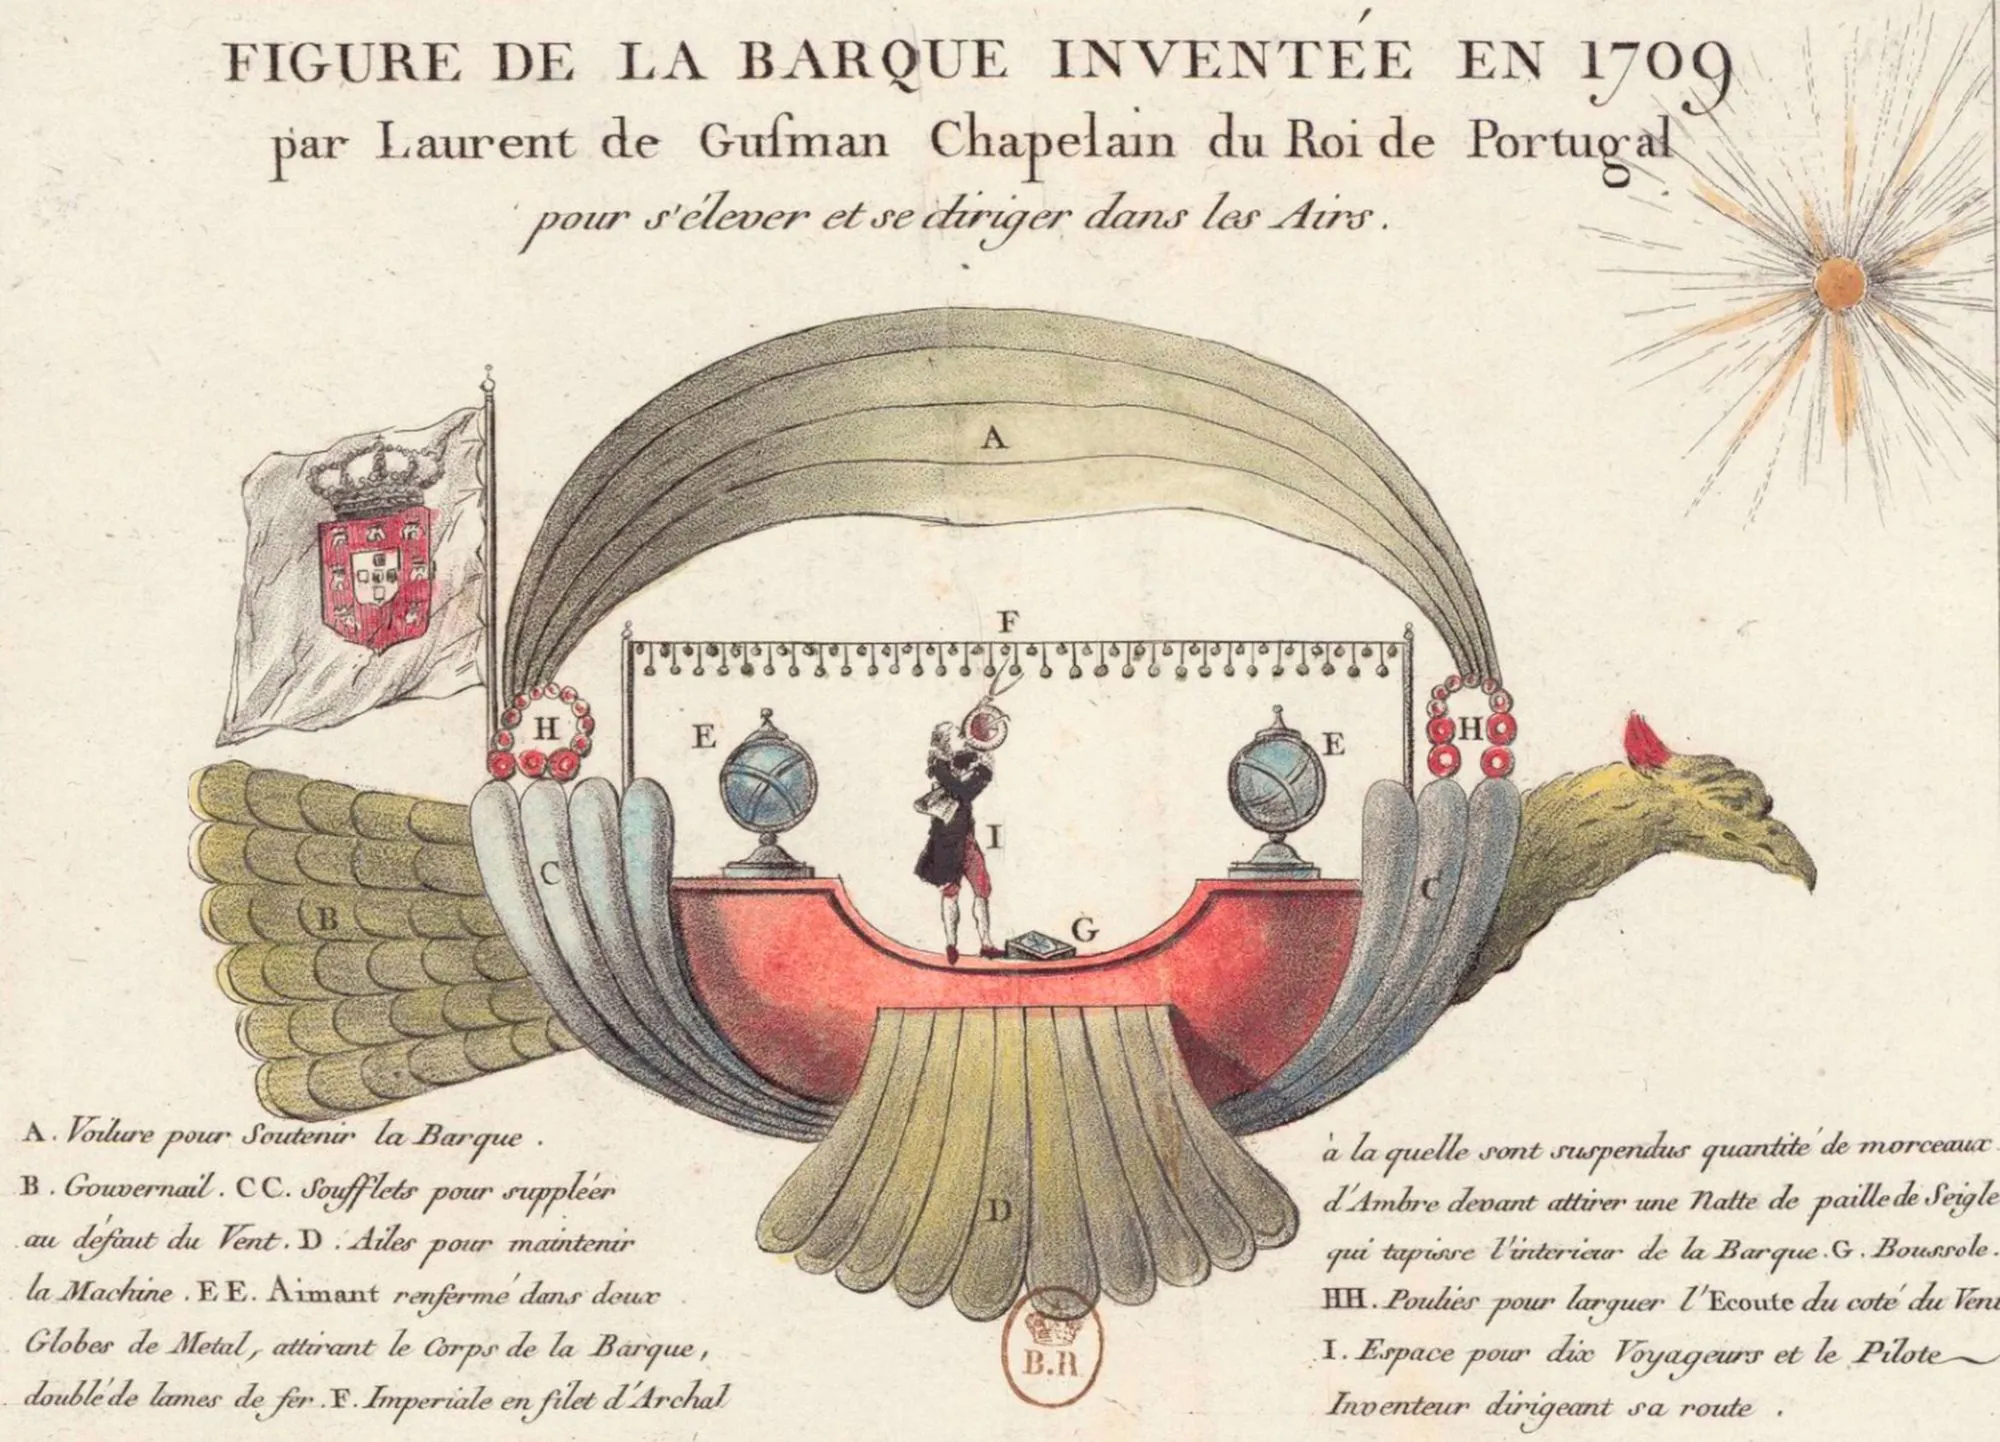 Laurent de Gusmão, Barque pour s'élever dans les airs inventée en 1709, v. 1784, estampe, 13,6 x 18,5 cm, BnF, Paris